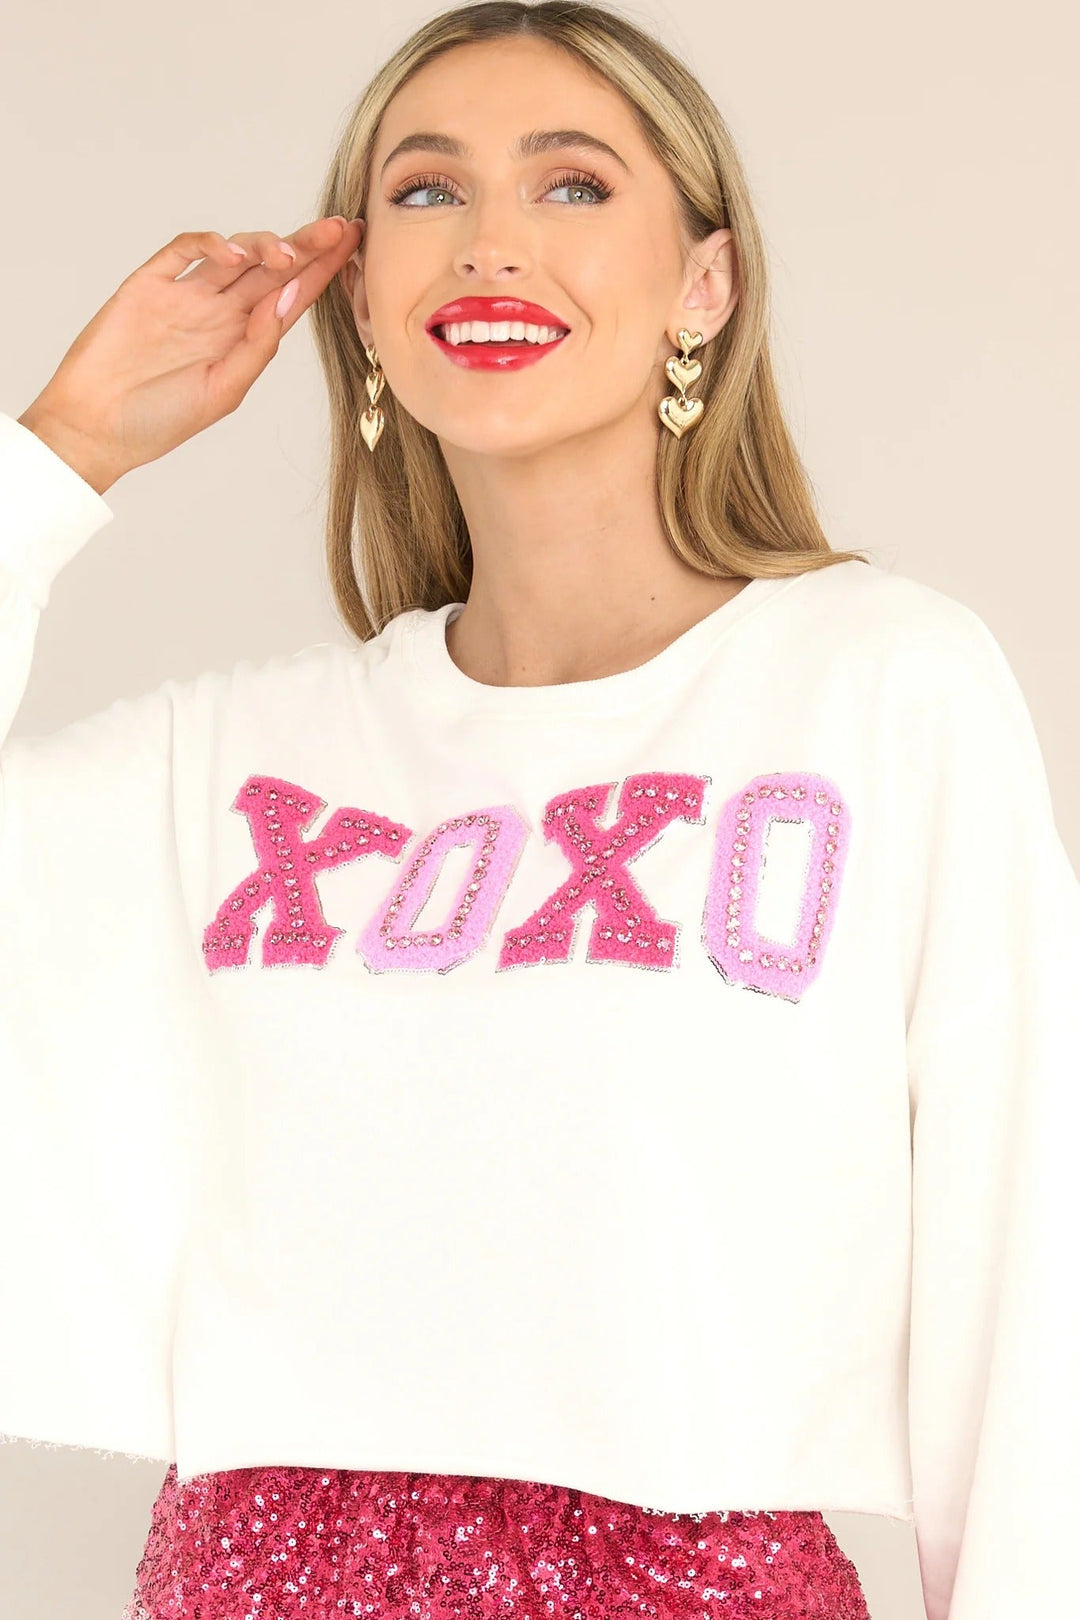 Gedacht aan je wit XOXO bijgesneden sweatshirt